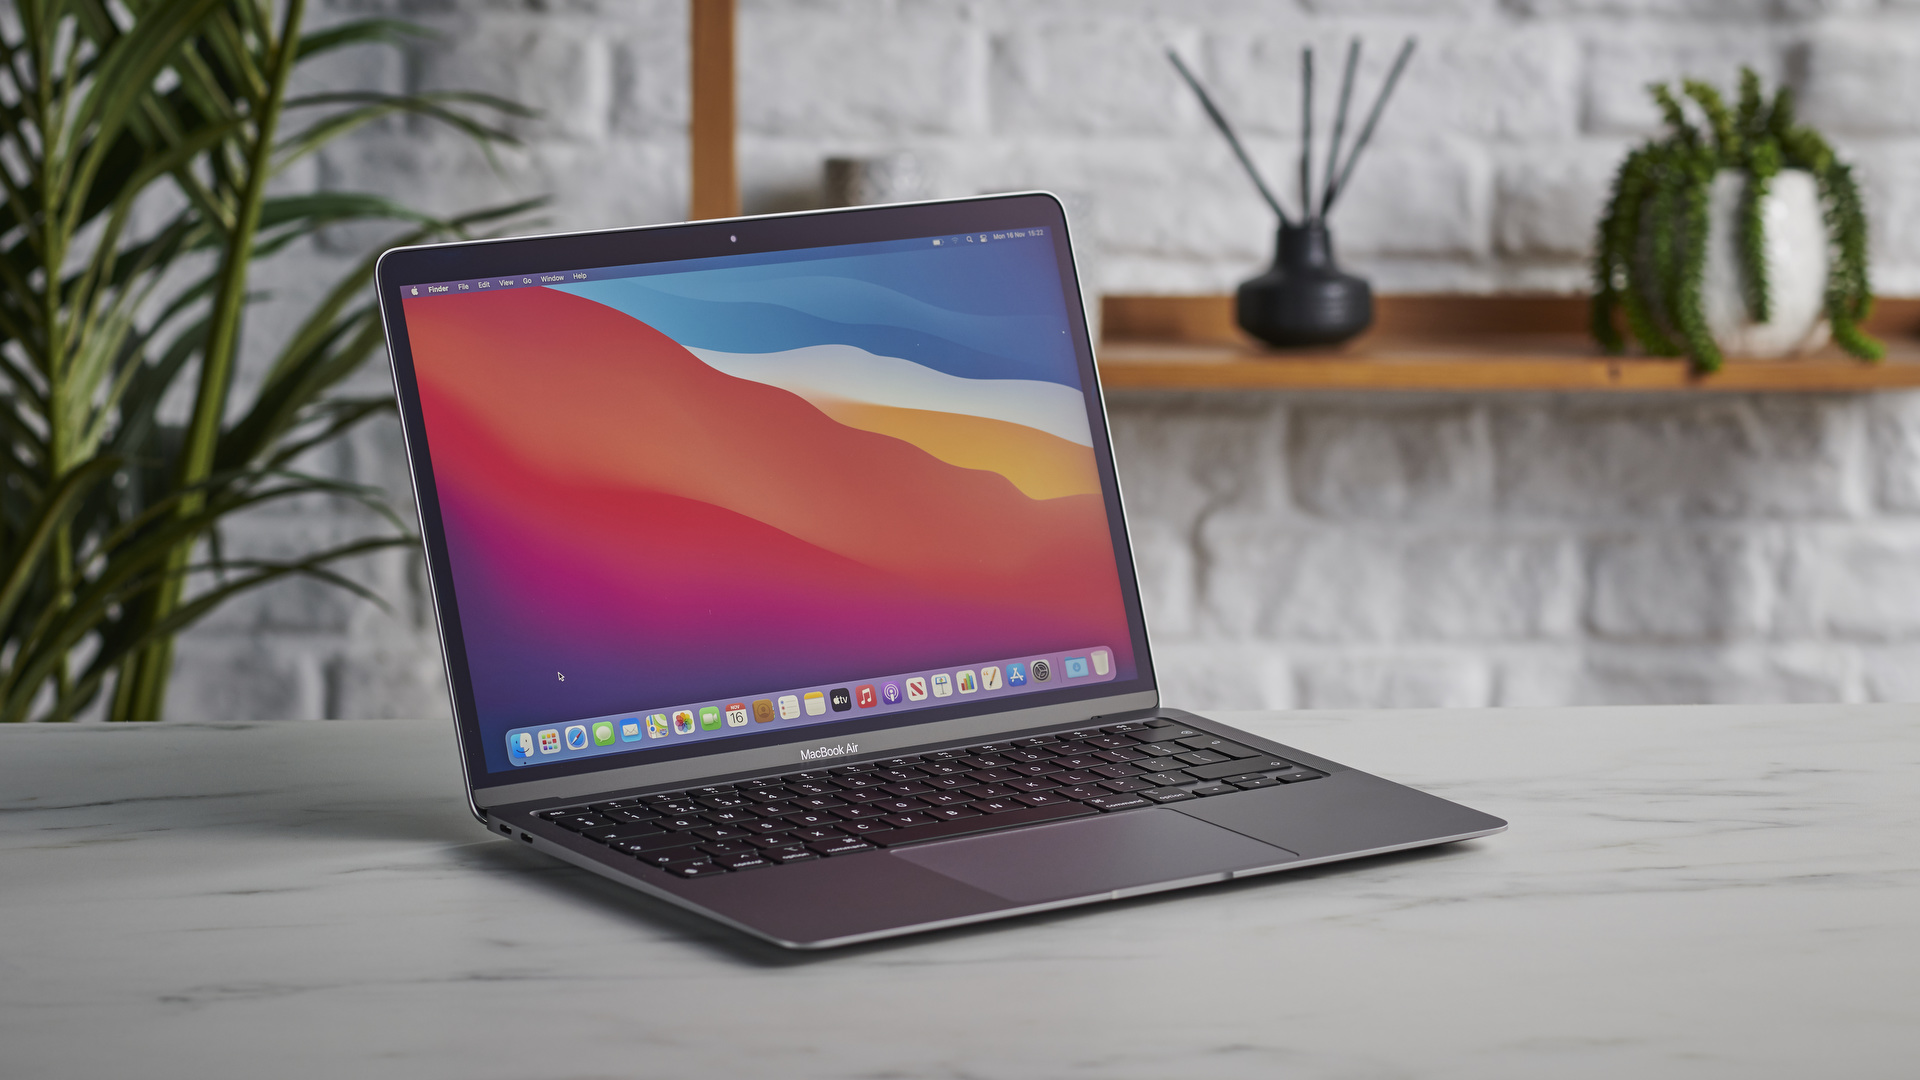 Sự ra đời của MacBook đã khiến ngành công nghiệp máy tính có những thay đổi lớn